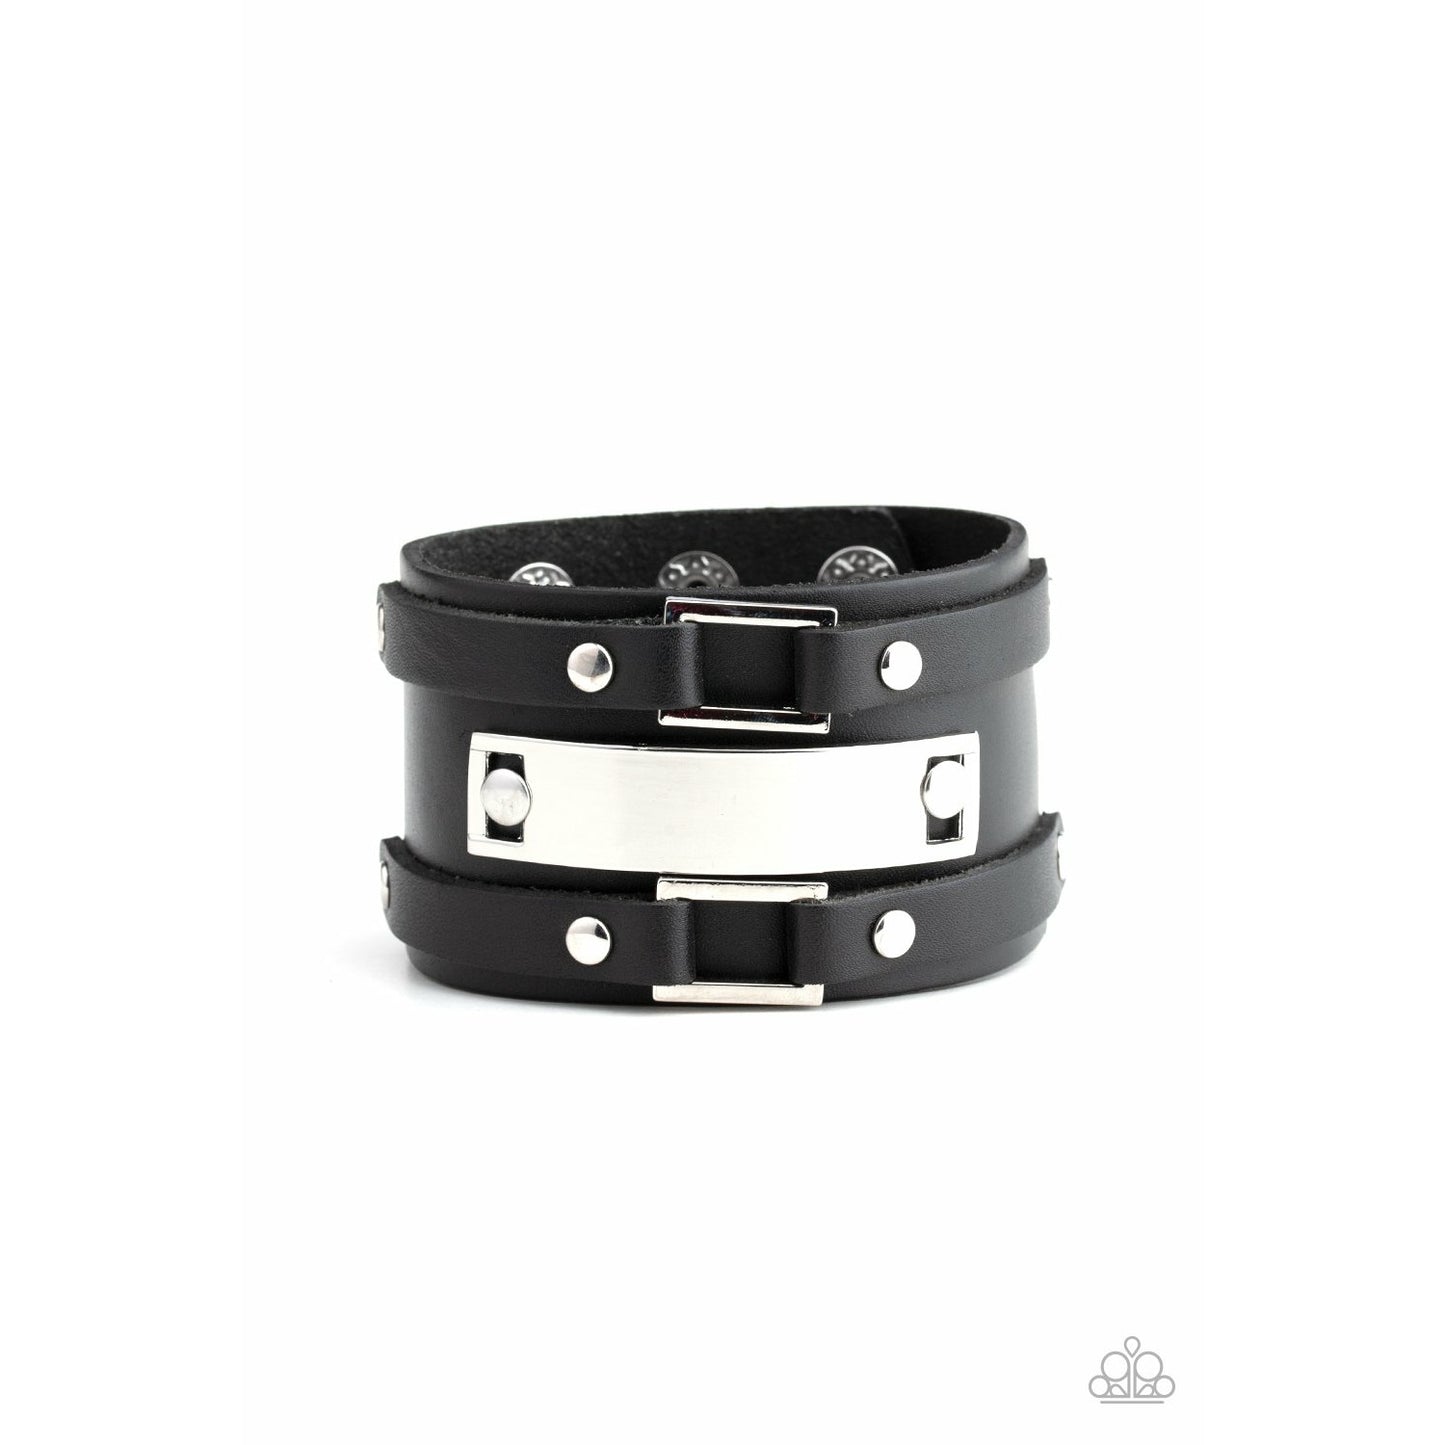 Rural Ranger - Black bracelet